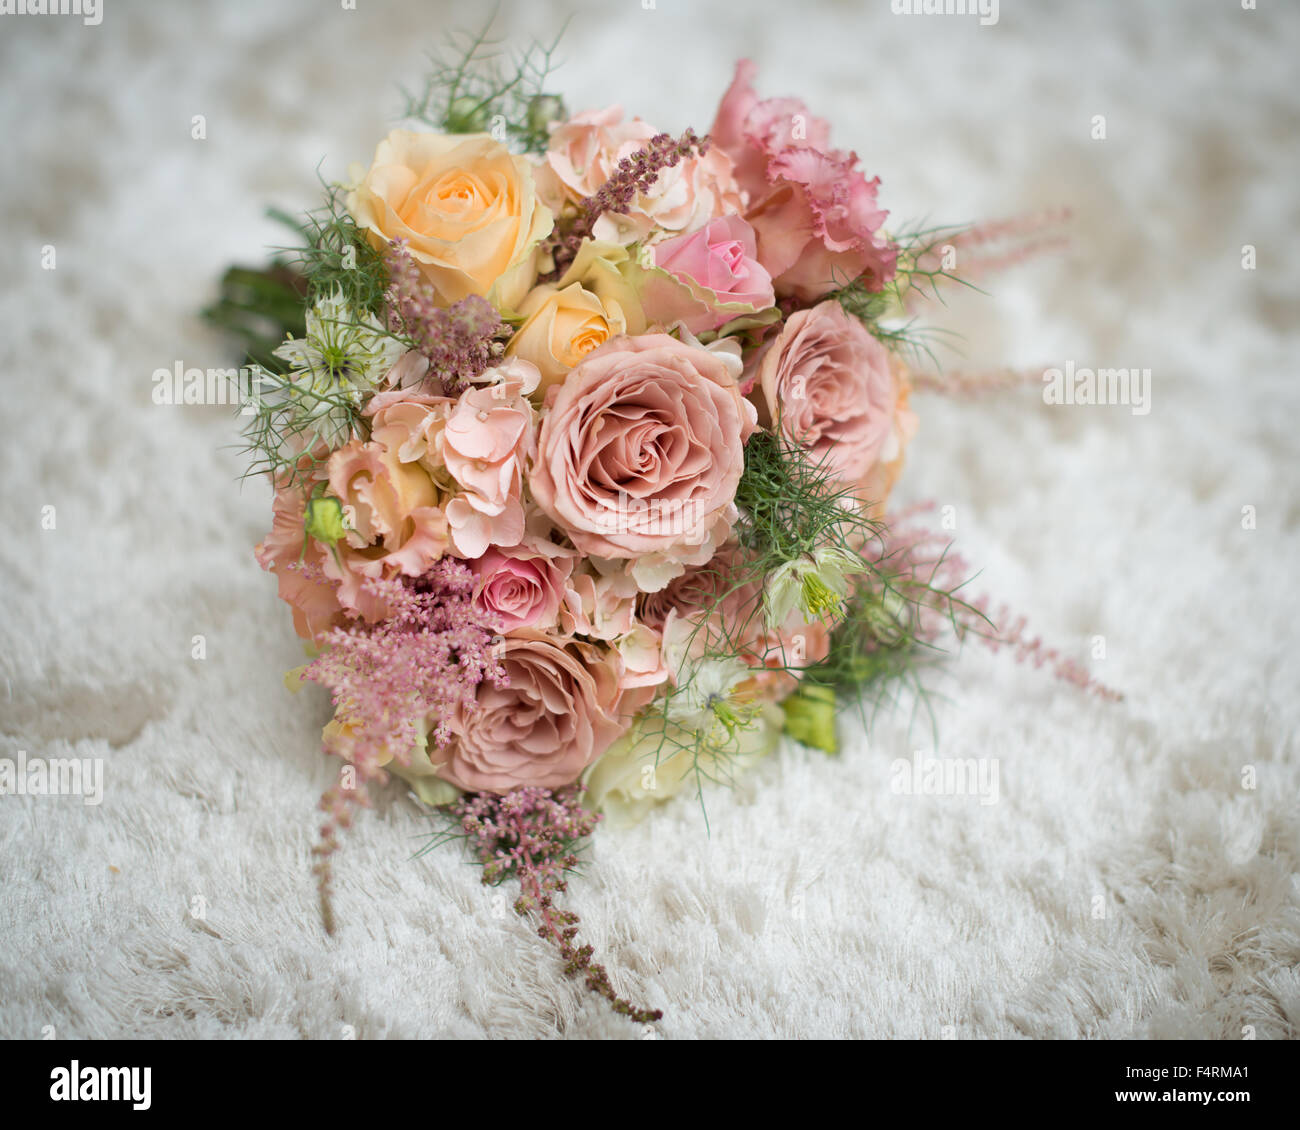 Bouquet nozze fiori rosa pesca e giallo limone con fogliame verde  bellissimo matrimonio di fiori per la sposa o damigella Foto stock - Alamy